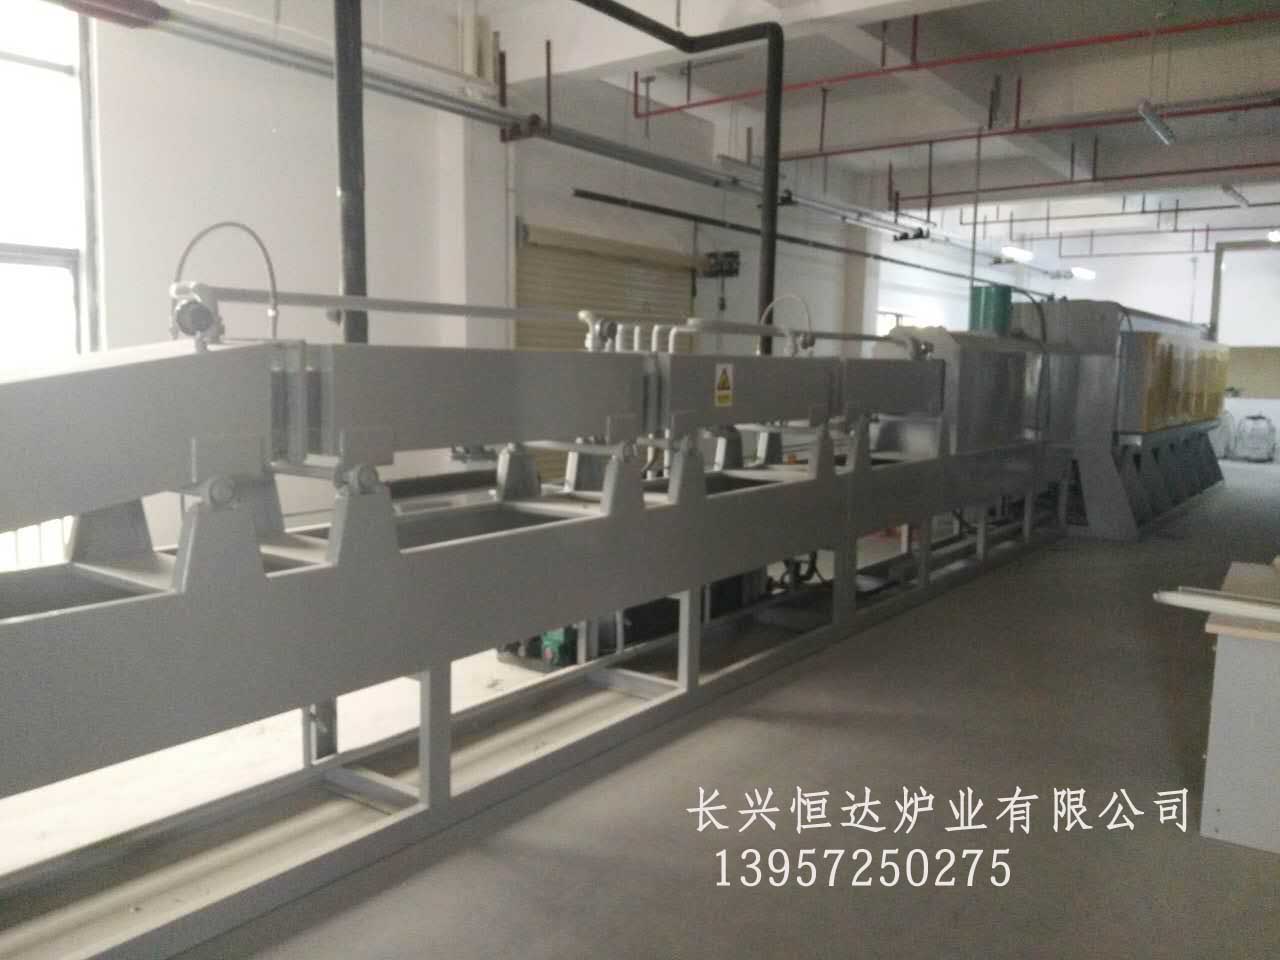 广州品牌铝质散热器钎焊炉哪家好